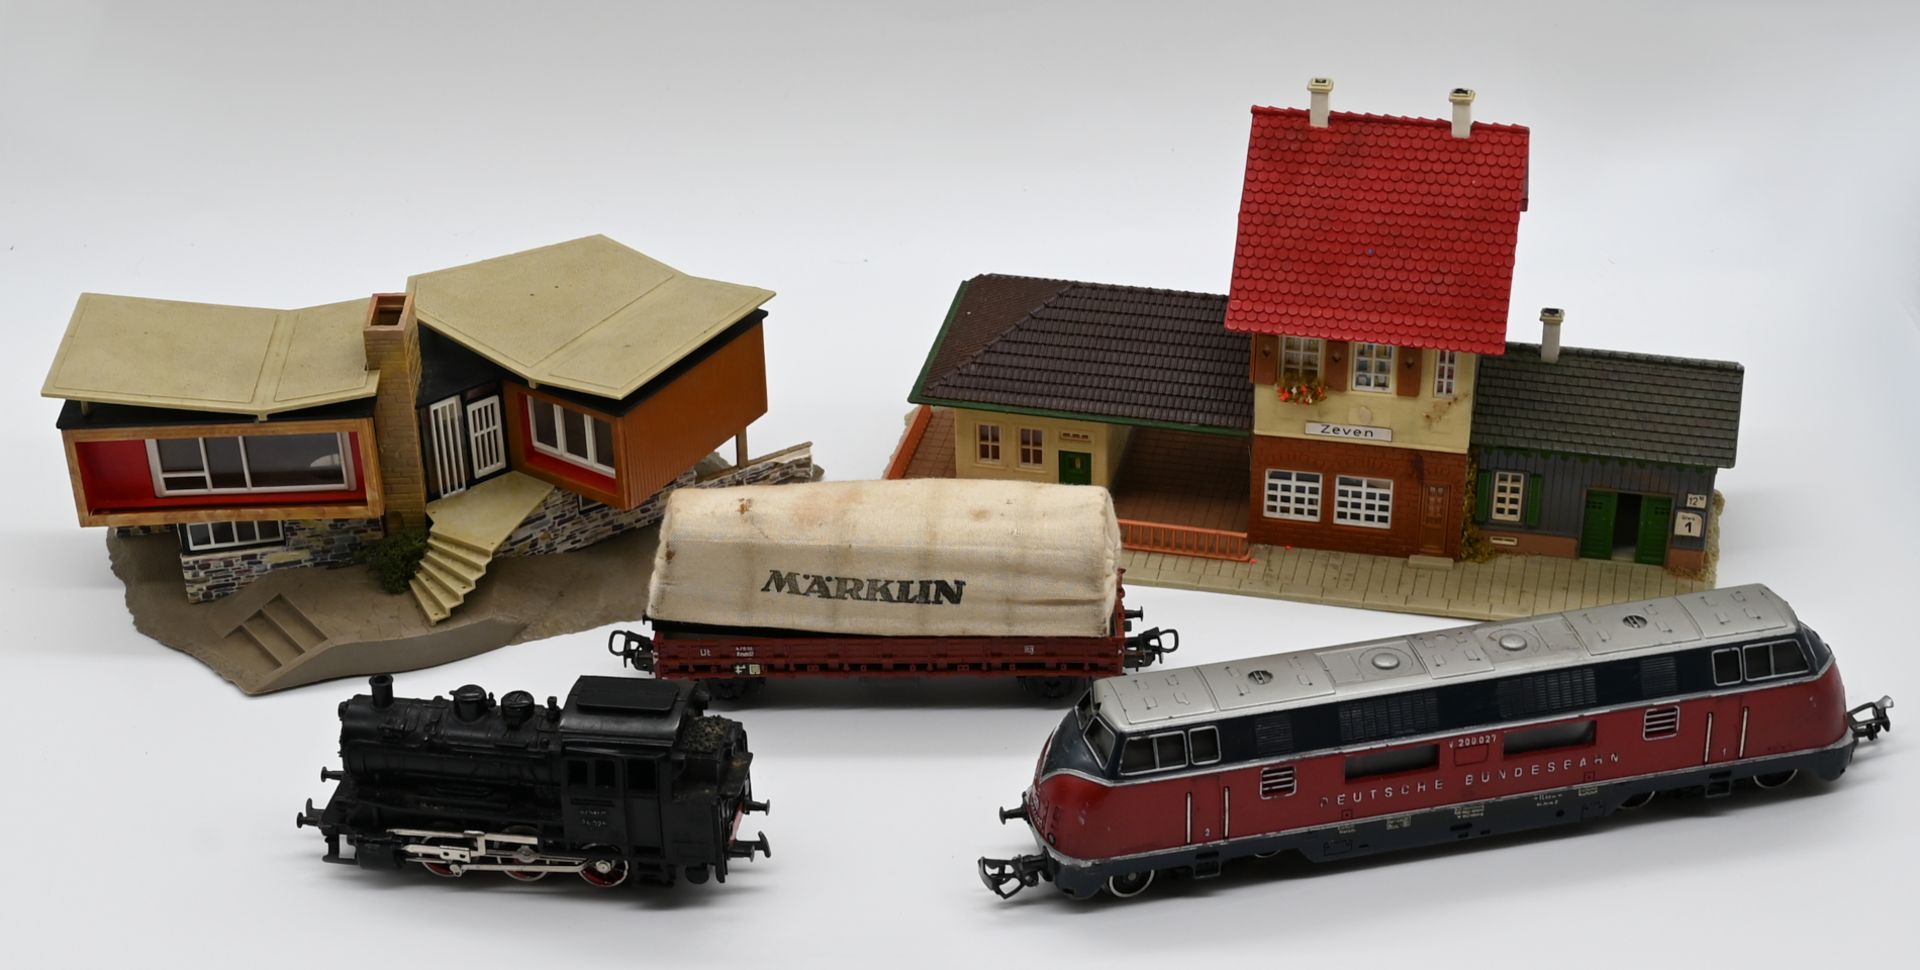 1 Konv. Modelleisenbahn MÄRKLIN: 1 Diesellok, 1 E-Lok, 2 Dampf-Loks, 1 Schienen-Bus sowie ca. 23 Per